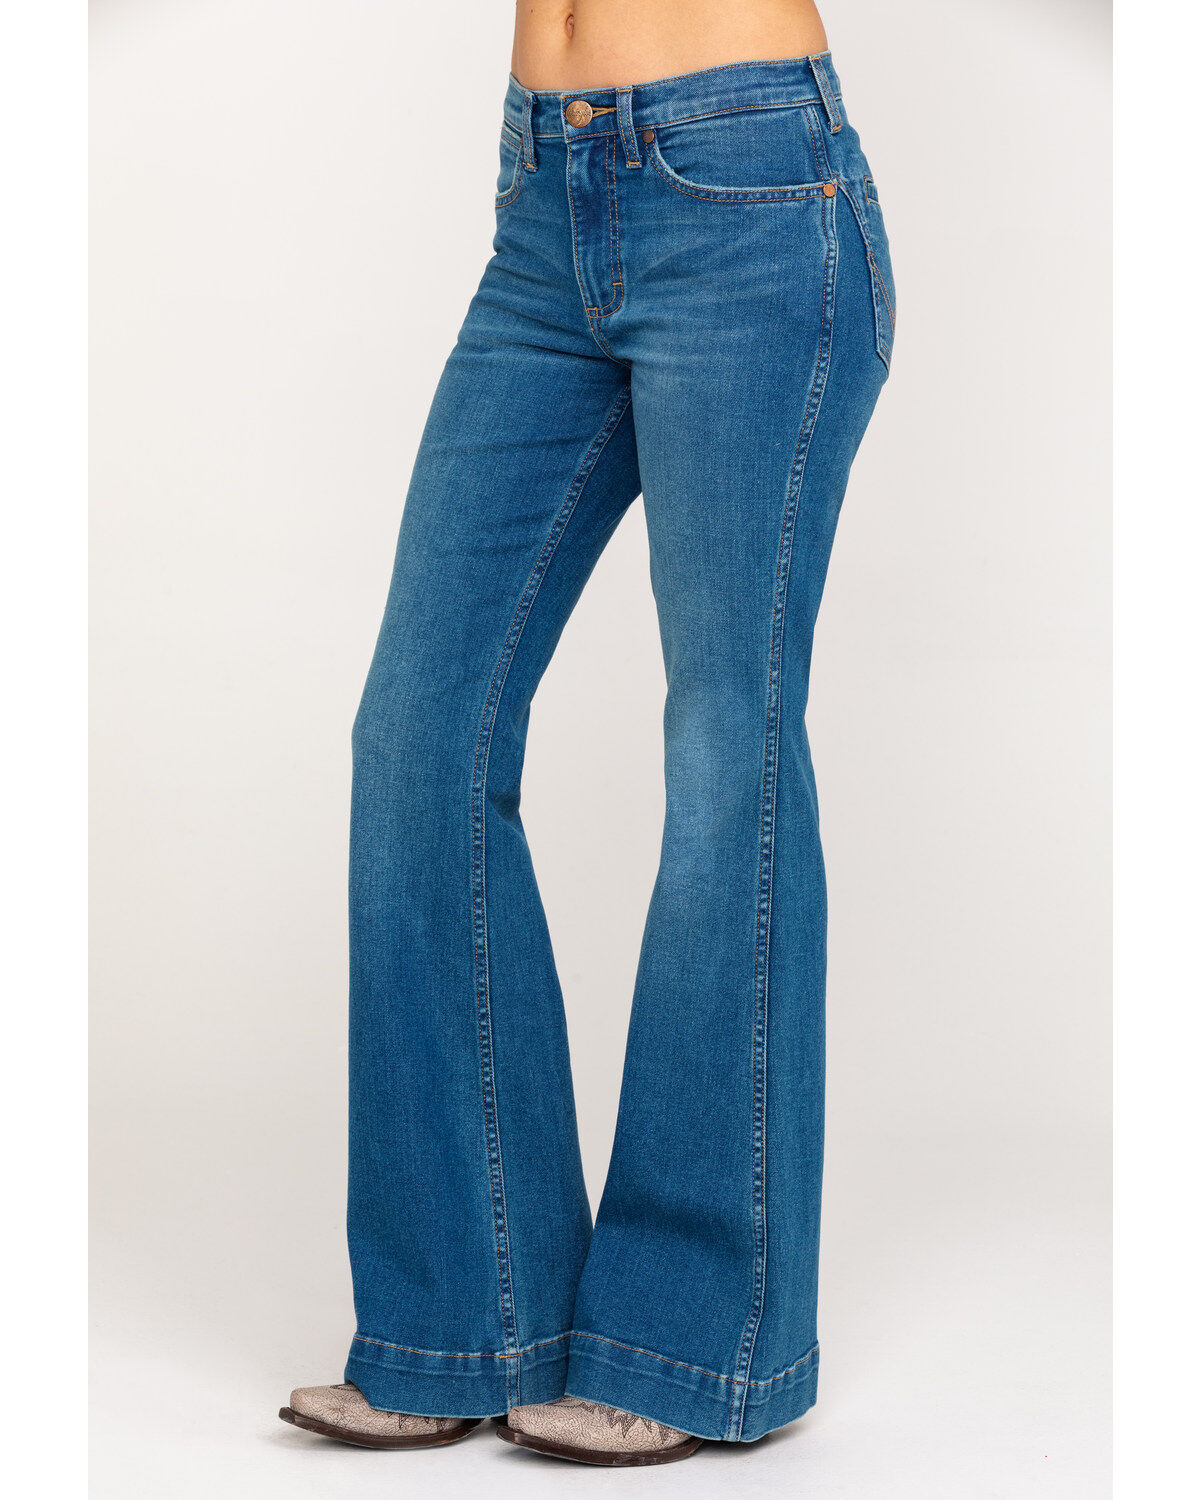 wrangler bell bottom jeans womens